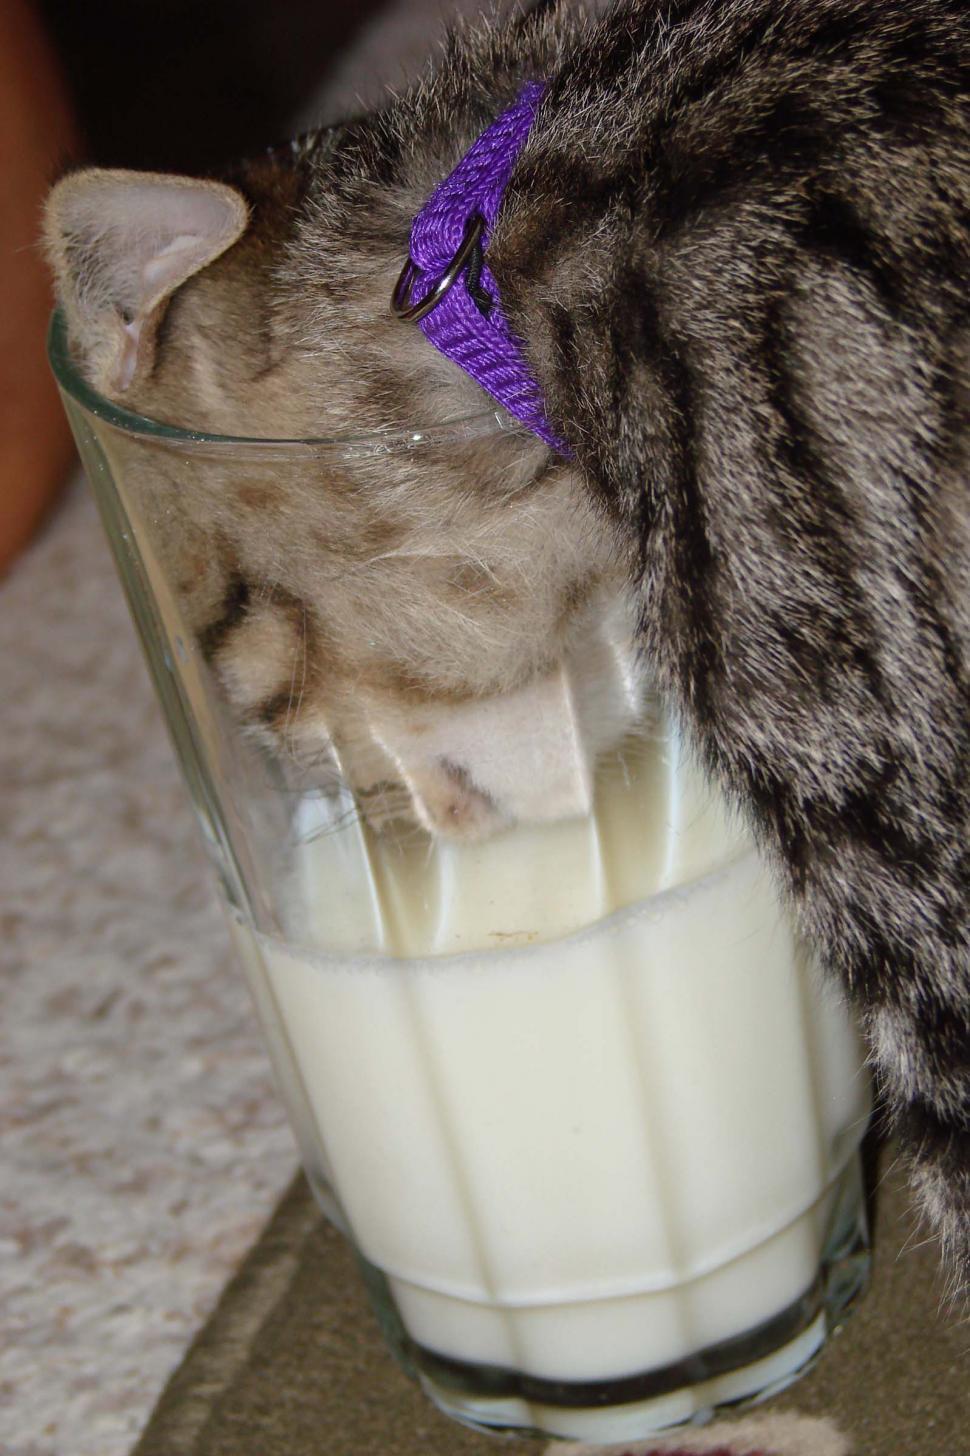 Free Image of Kitten Drinking Milk 